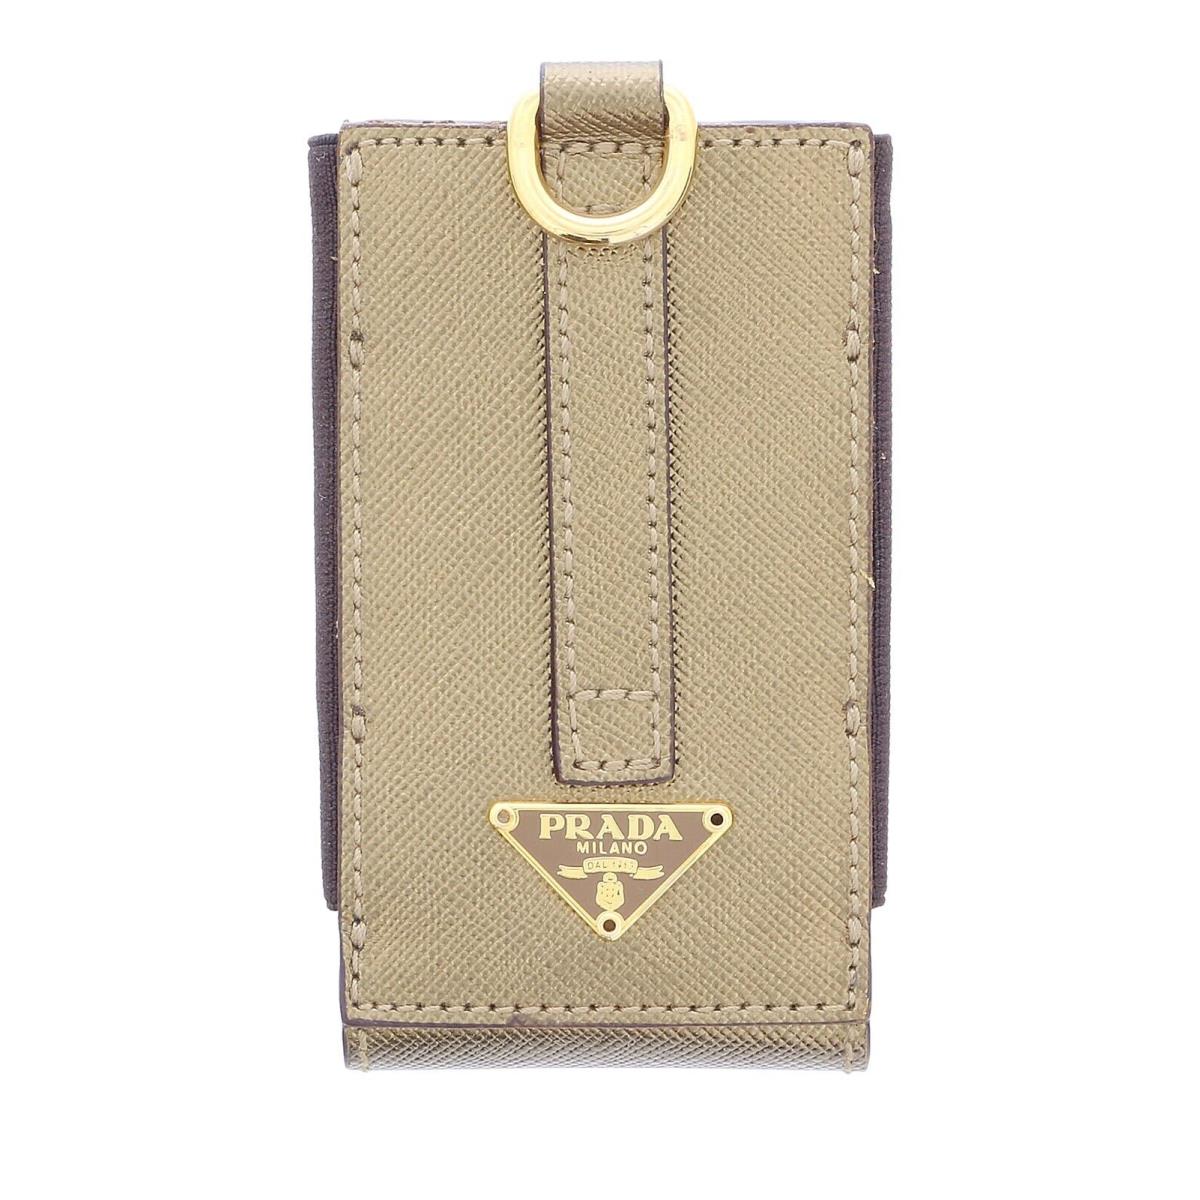 Prada Gold Leather Signature Ipod Case Accessory Bag Charm